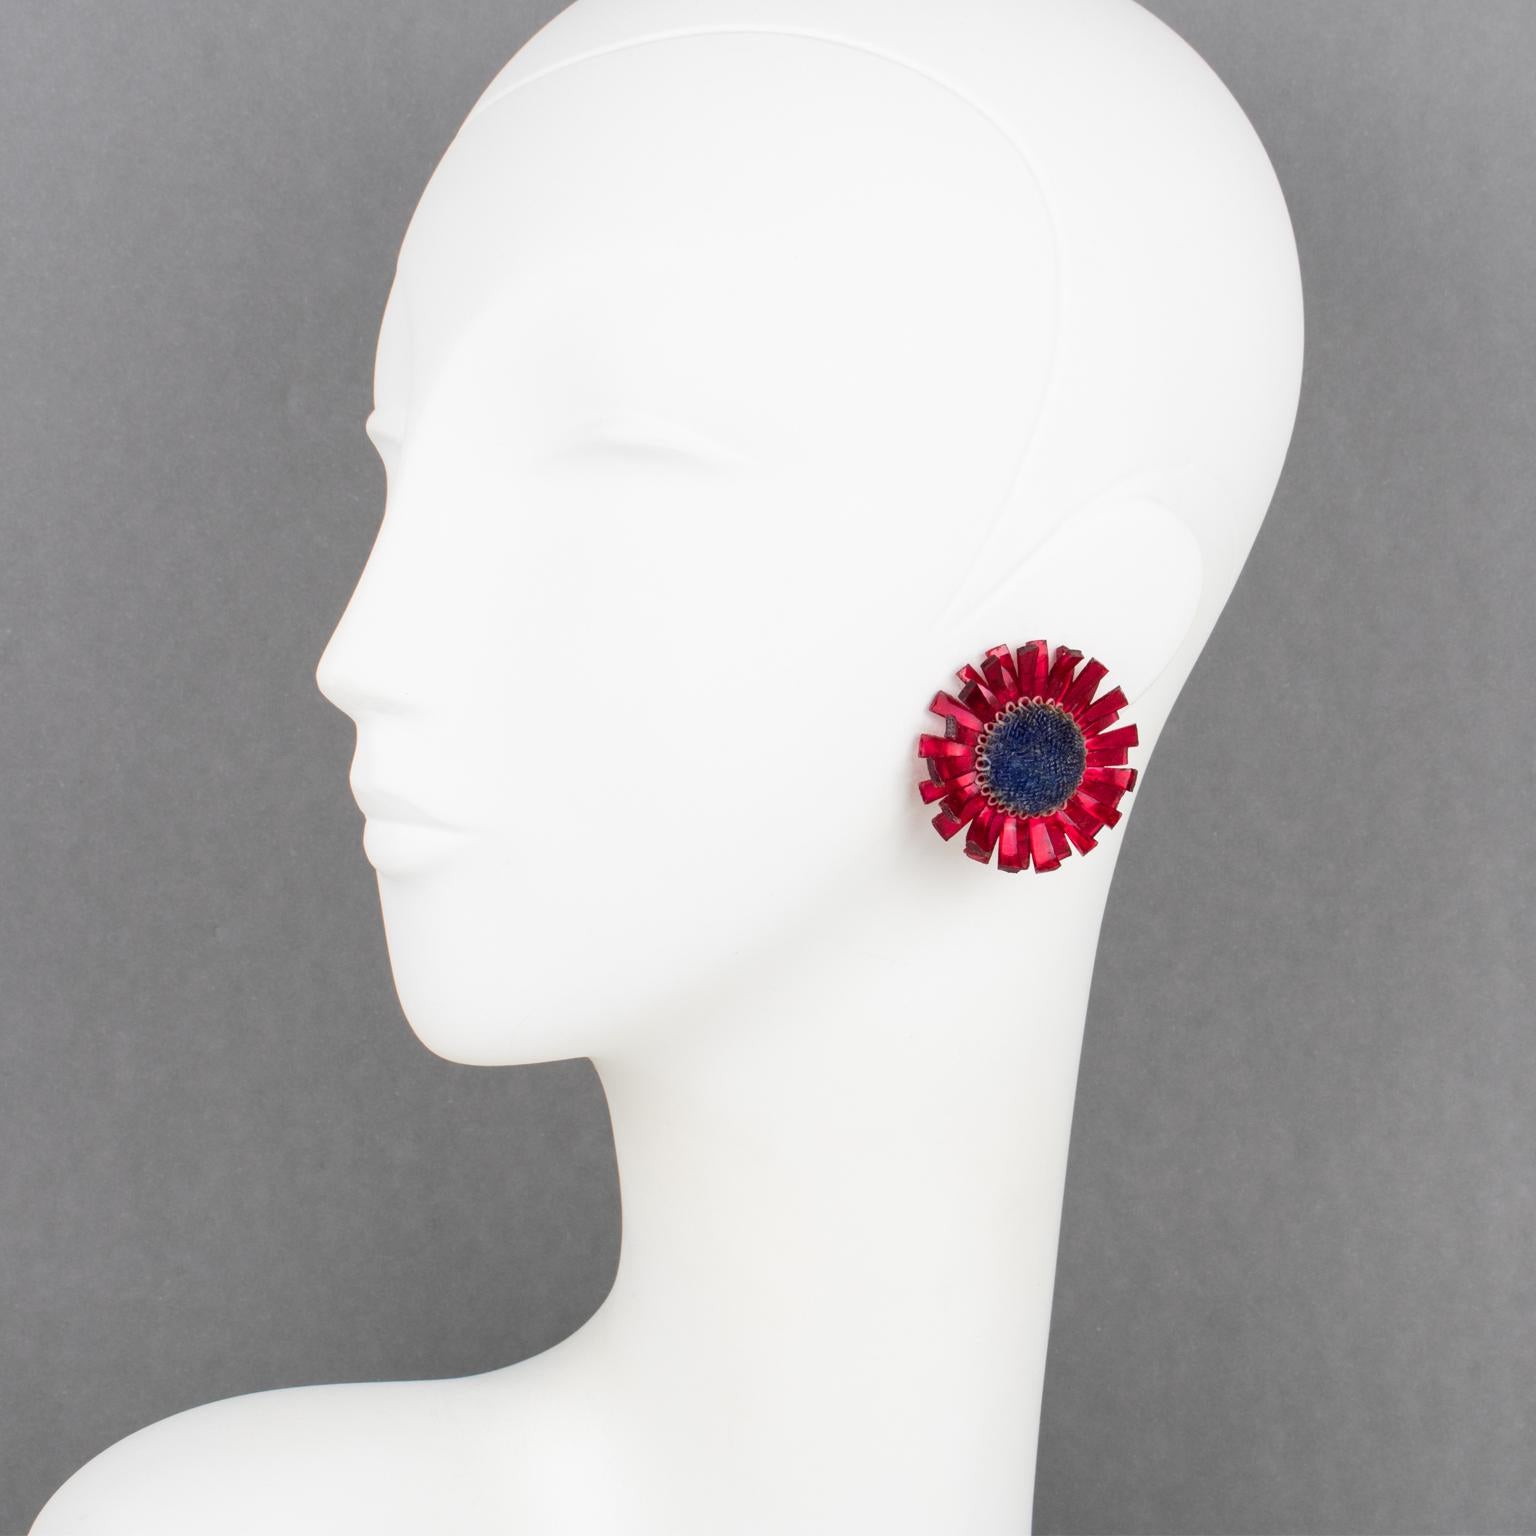 Diese exquisiten Monique Vedie Ohrringe aus Harz oder Talosel zeichnen sich durch die Form einer Distelblüte in einem geschnitzten dimensionalen Design mit einem strukturierten Muster in leuchtender, perlmutterfarbener karminroter Farbe aus, die mit